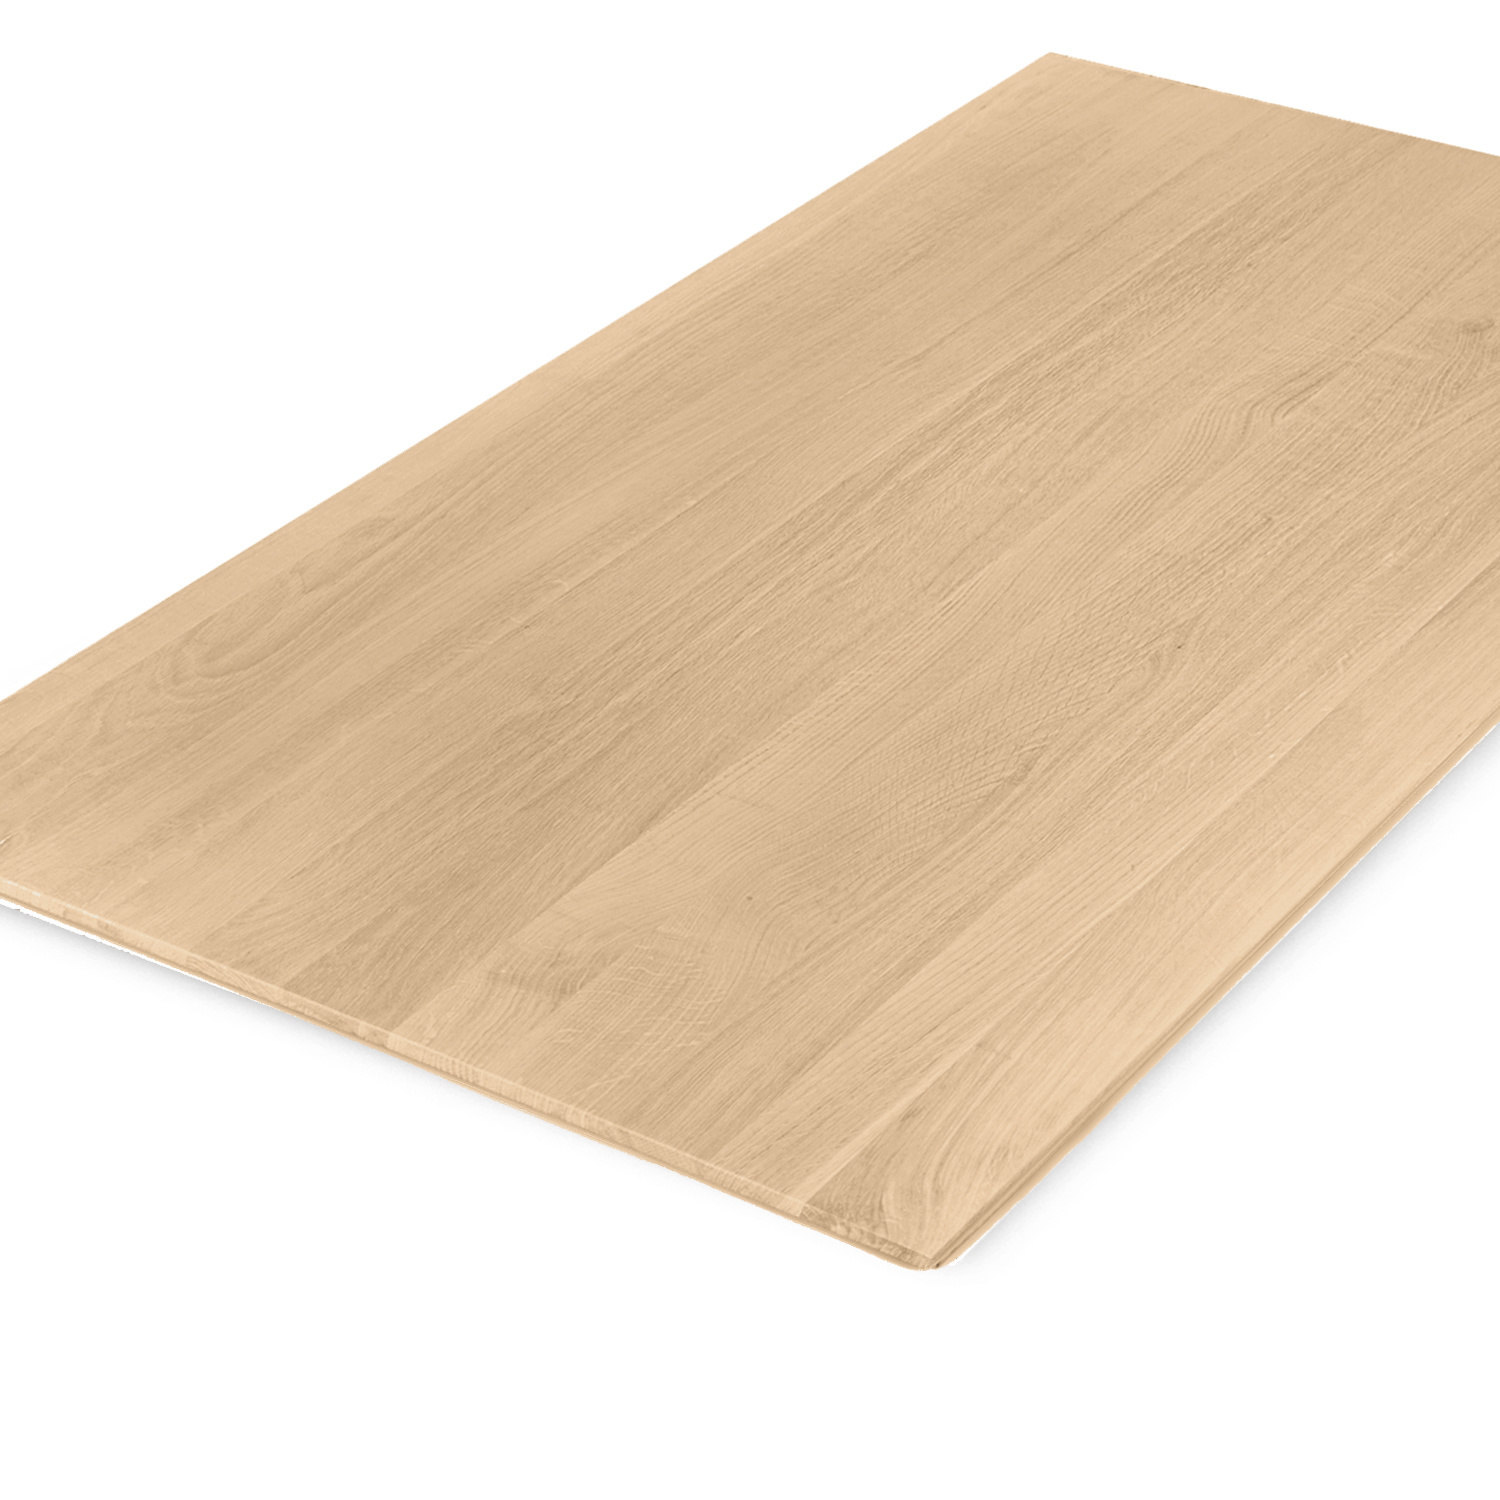  Eiken tafelblad met verjongde rand - 2,7 cm dik (1-laag) - Diverse afmetingen - foutvrij Europees eikenhout - met brede lamellen (circa 10-12 cm) - verlijmd kd 8-12%